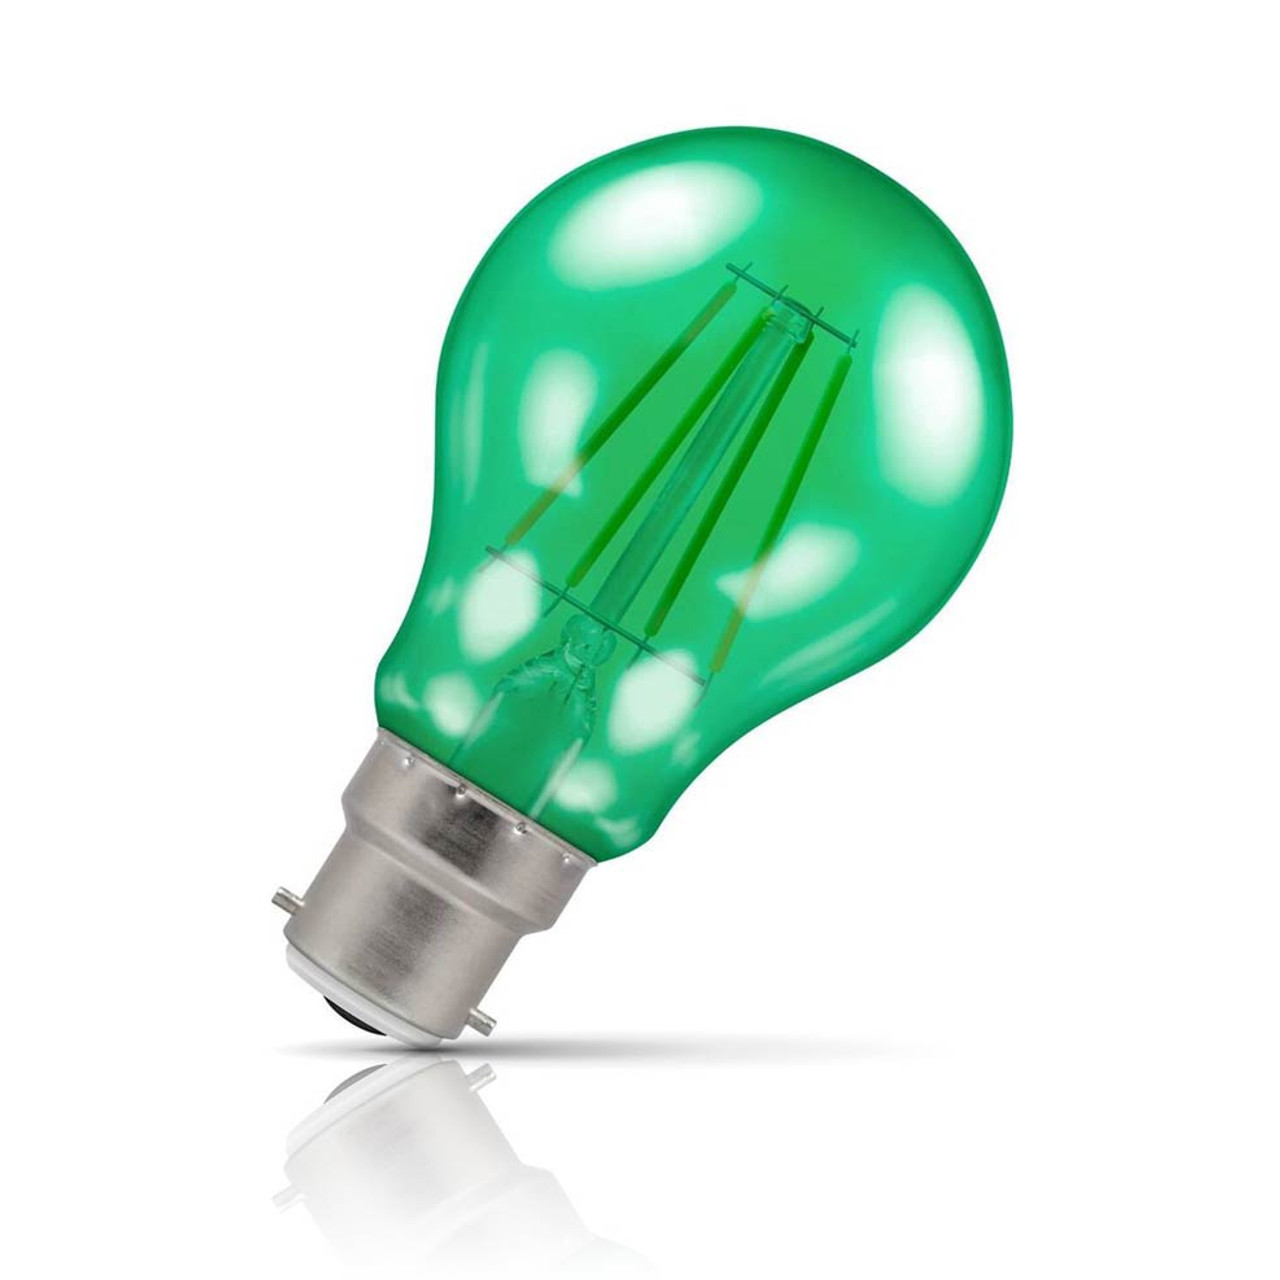 LED Light Bulb Buying Guide - The Lightbulb Co. UK